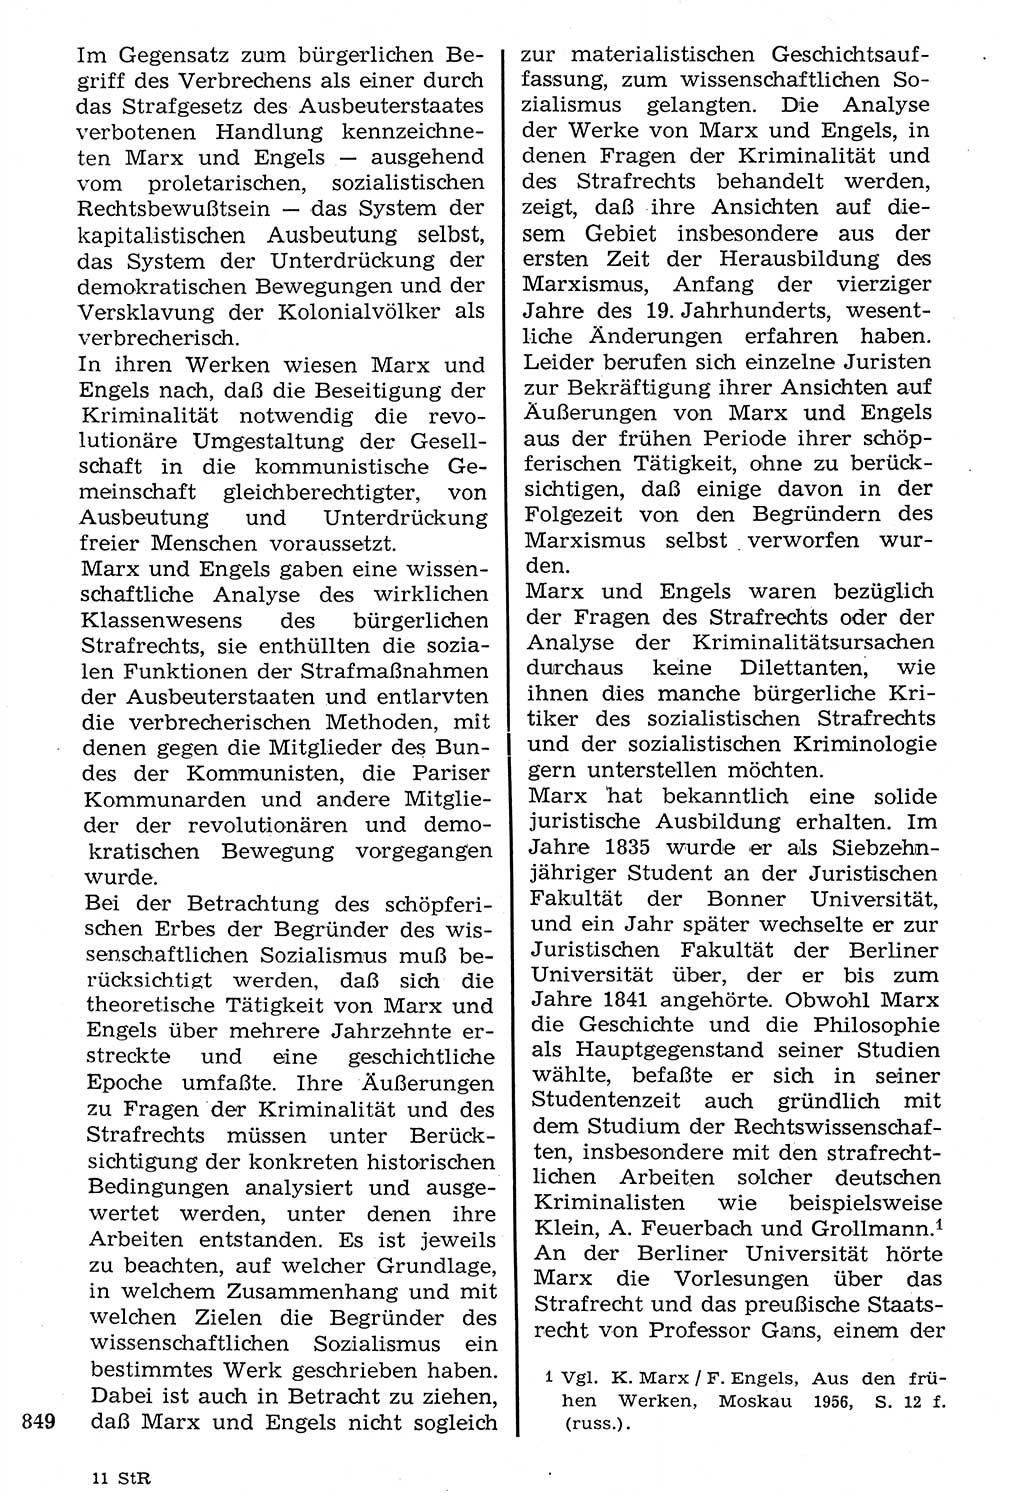 Staat und Recht (StuR), 17. Jahrgang [Deutsche Demokratische Republik (DDR)] 1968, Seite 849 (StuR DDR 1968, S. 849)